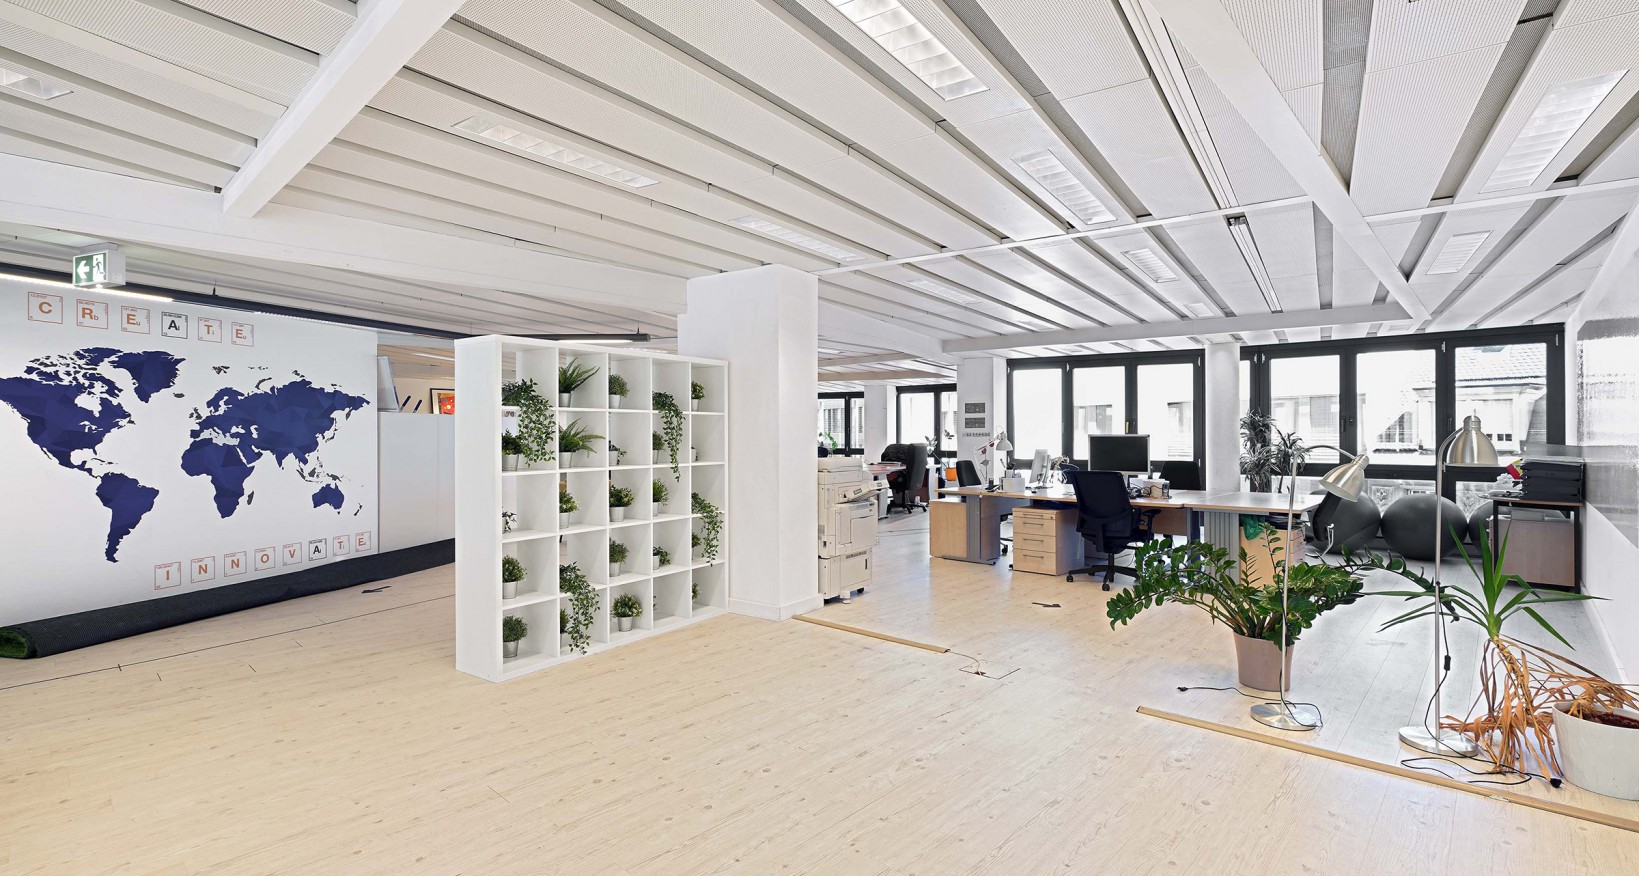 In der unmittelbaren Nähe des Aeschenplatzes, vermieten wir in einer repräsentativen Liegenschaft eine attraktive Bürofläche mit 695 m².